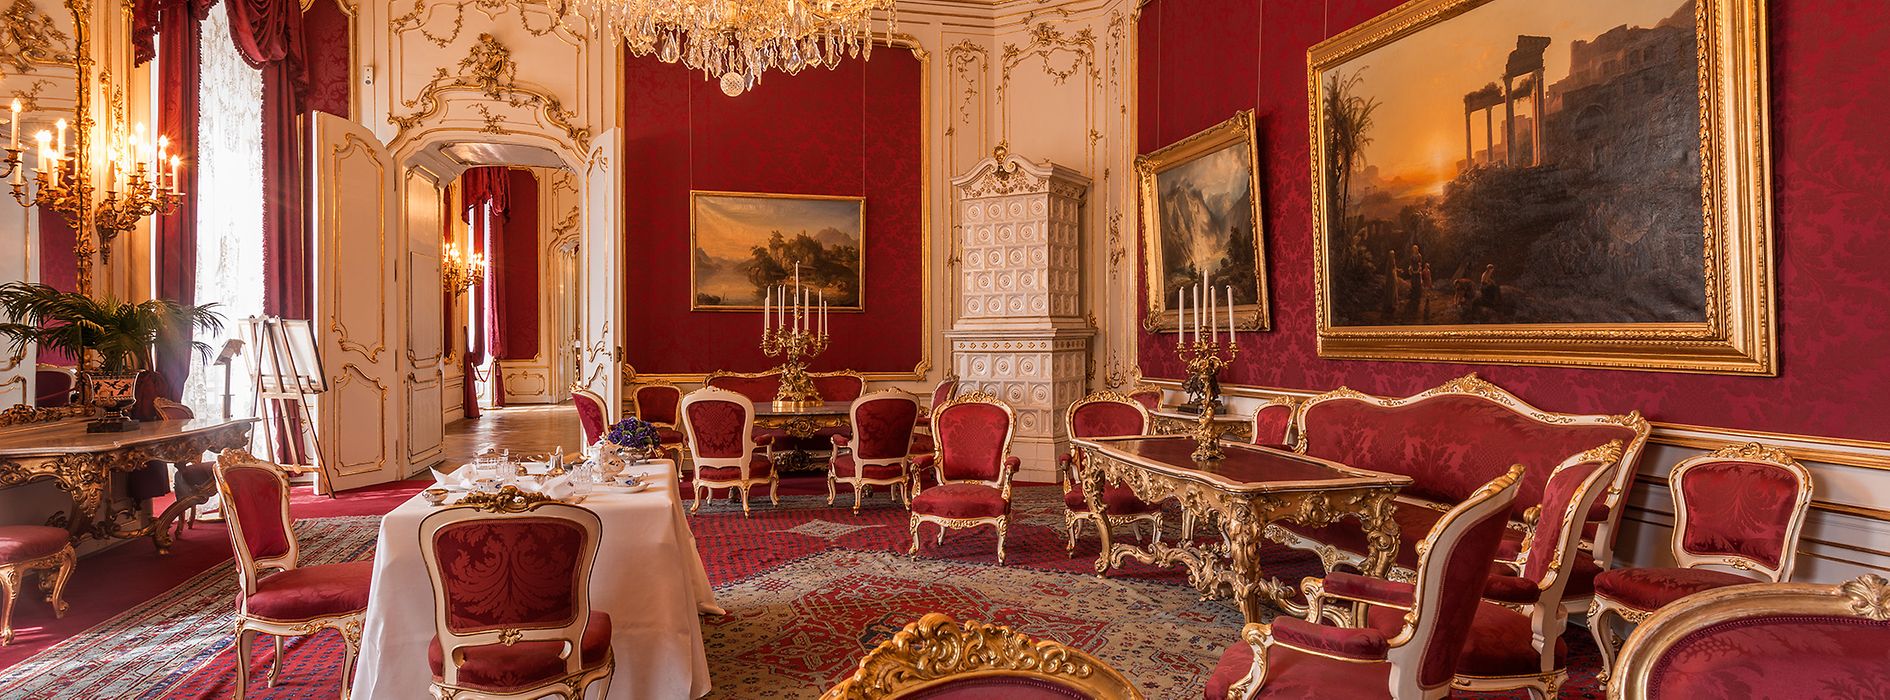 Gran salón de la Emperatriz Elisabeth